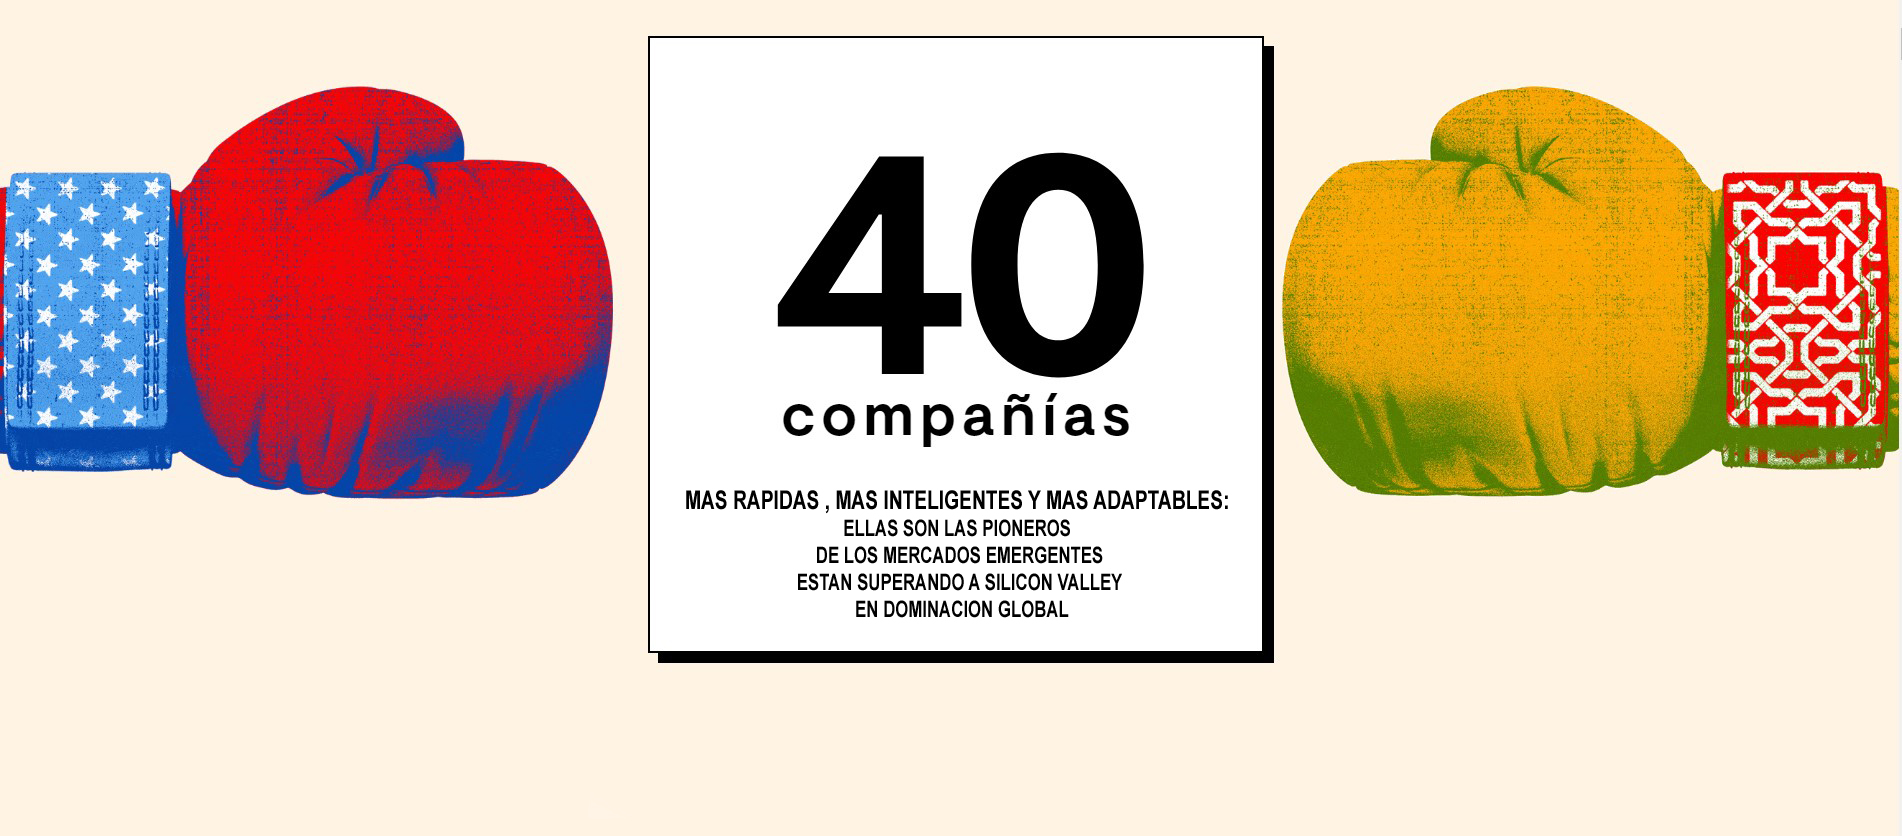 40 Compañías más rápidas y mas inteligentes